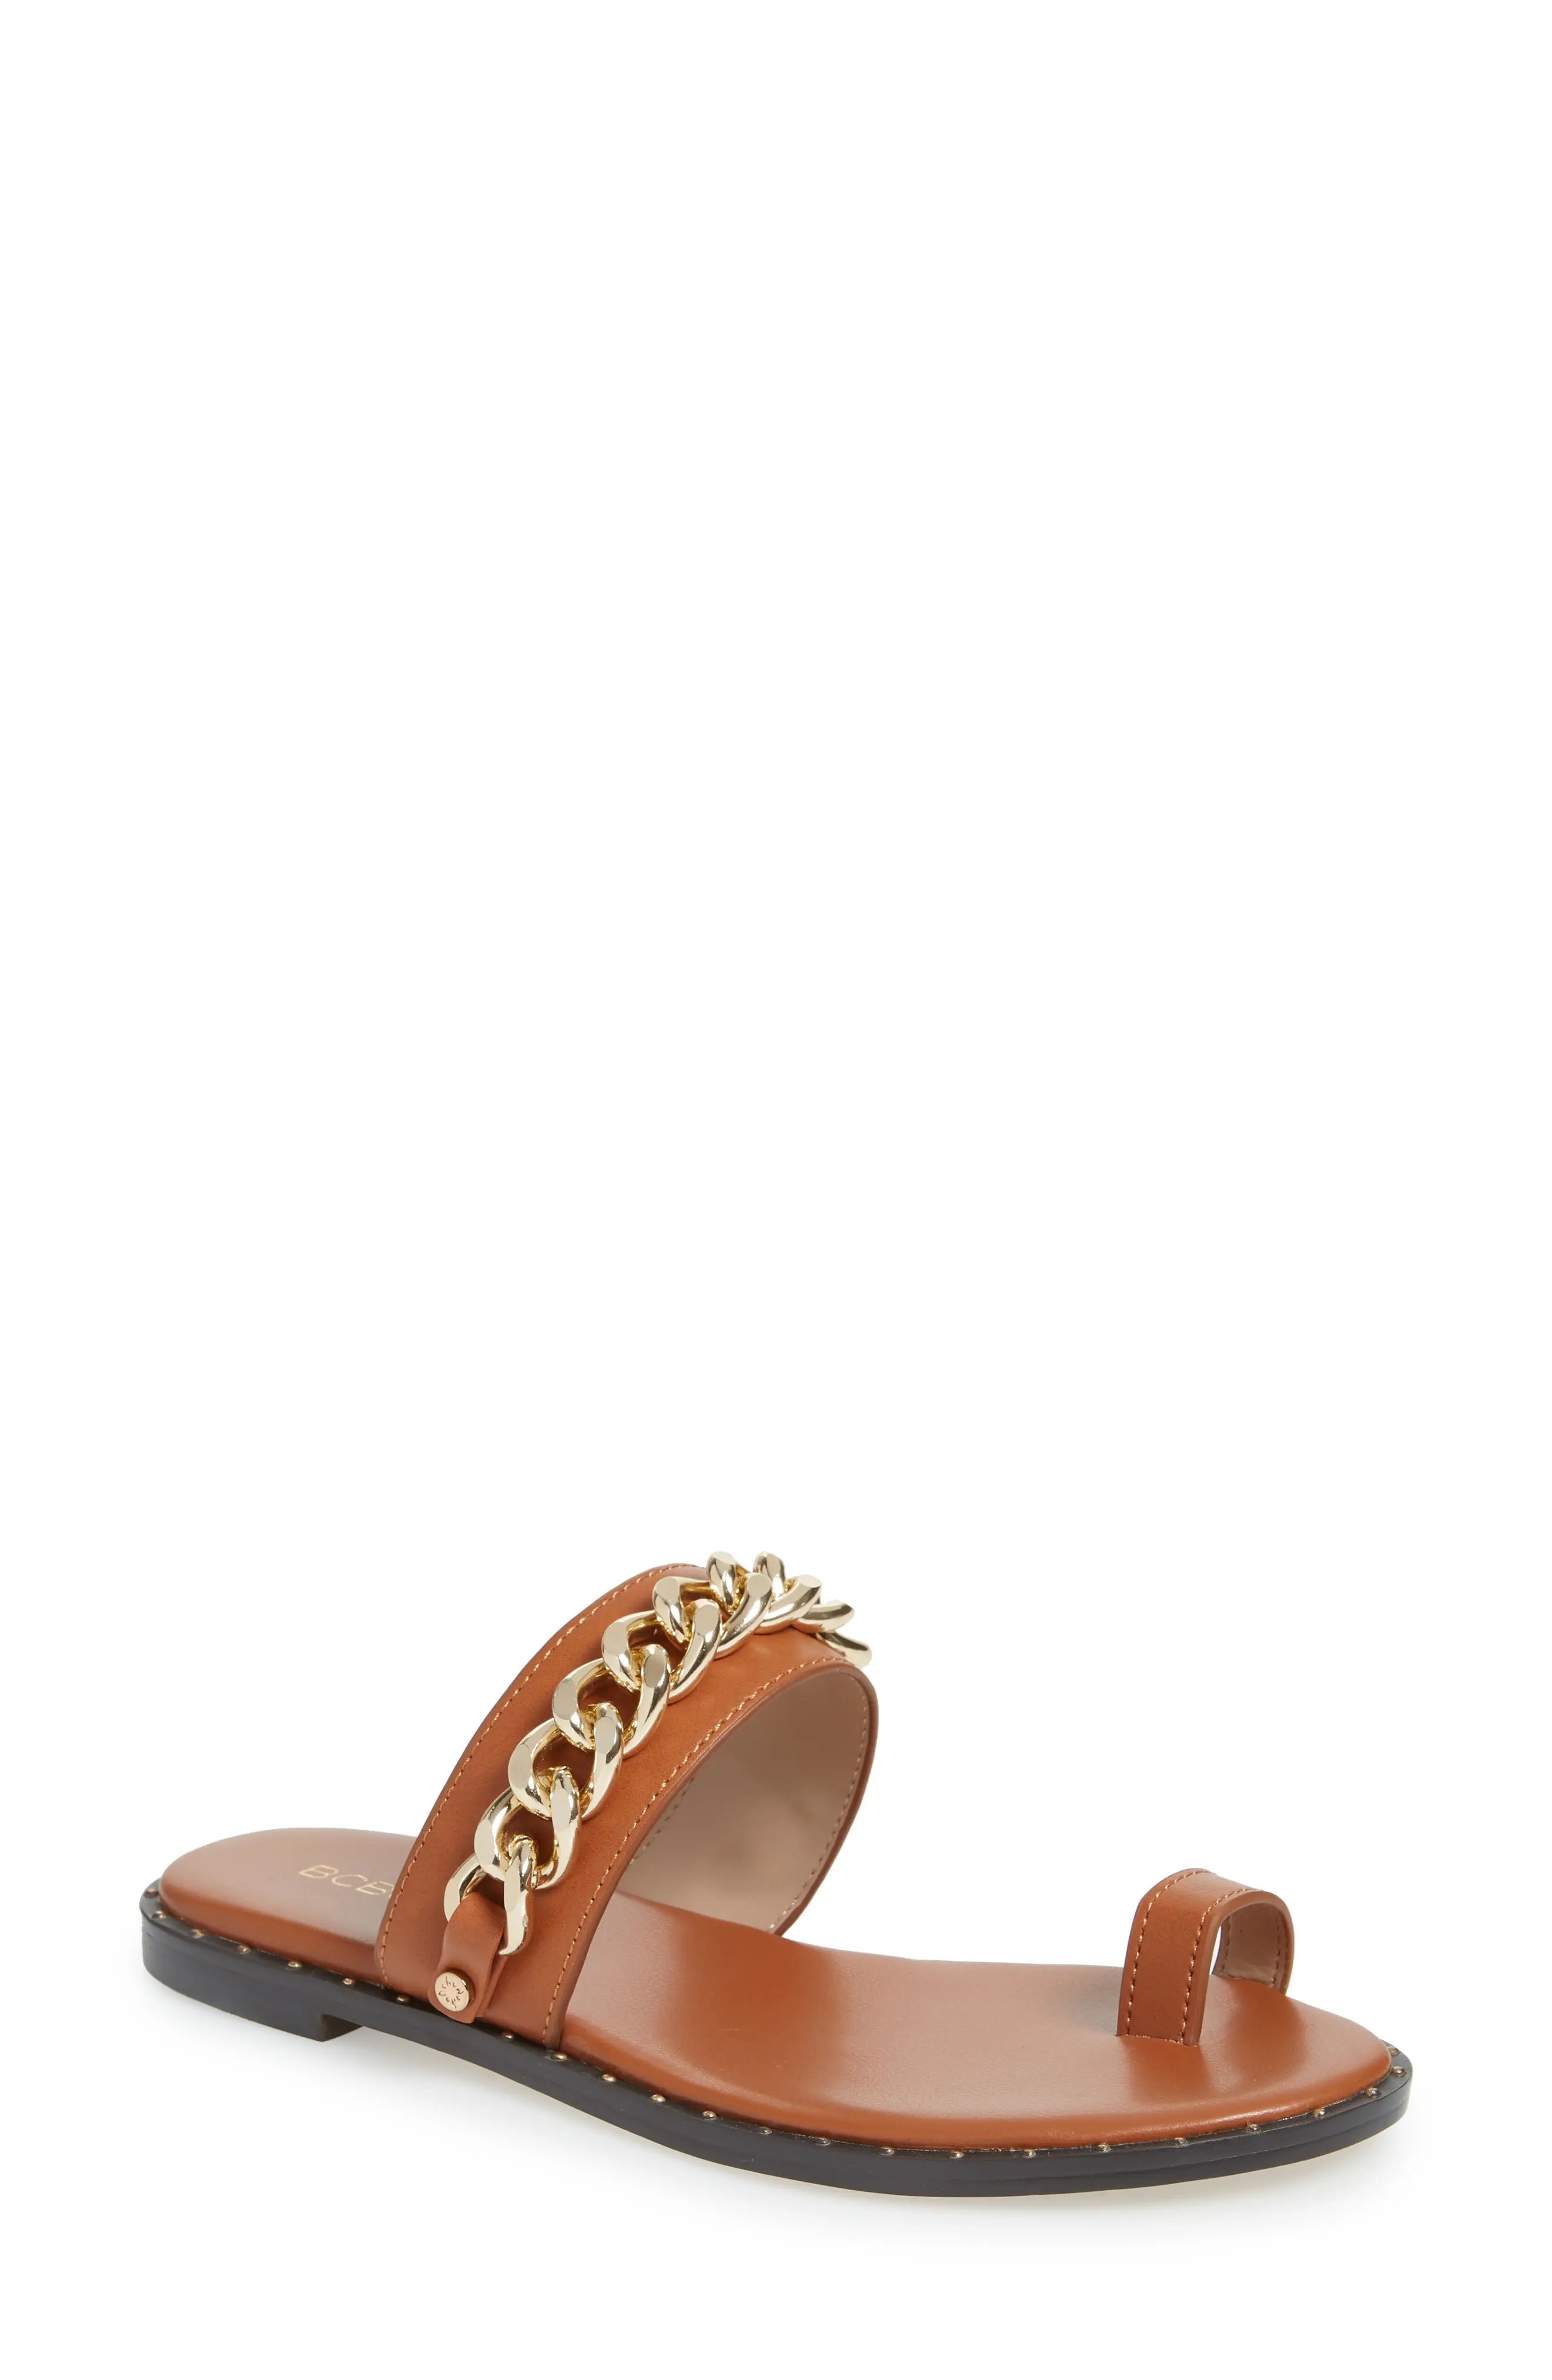 Women's Bcbg Zola Chain Slide Sandal, Size 5 M - Brown | Nordstrom